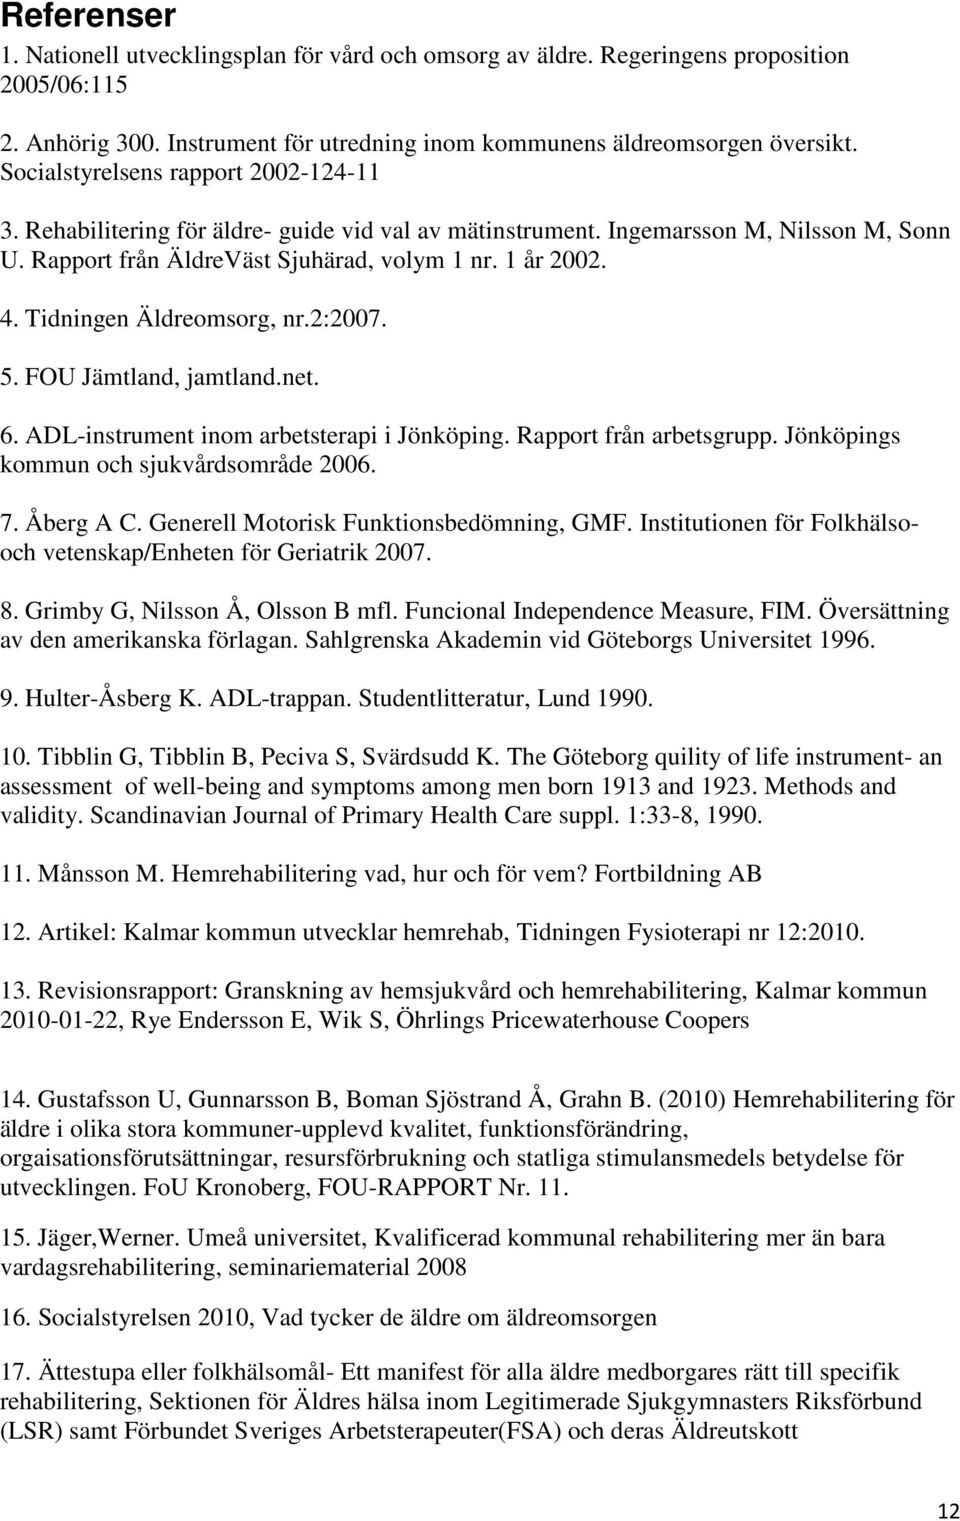 Tidningen Äldreomsorg, nr.2:2007. 5. FOU Jämtland, jamtland.net. 6. ADL-instrument inom arbetsterapi i Jönköping. Rapport från arbetsgrupp. Jönköpings kommun och sjukvårdsområde 2006. 7. Åberg A C.